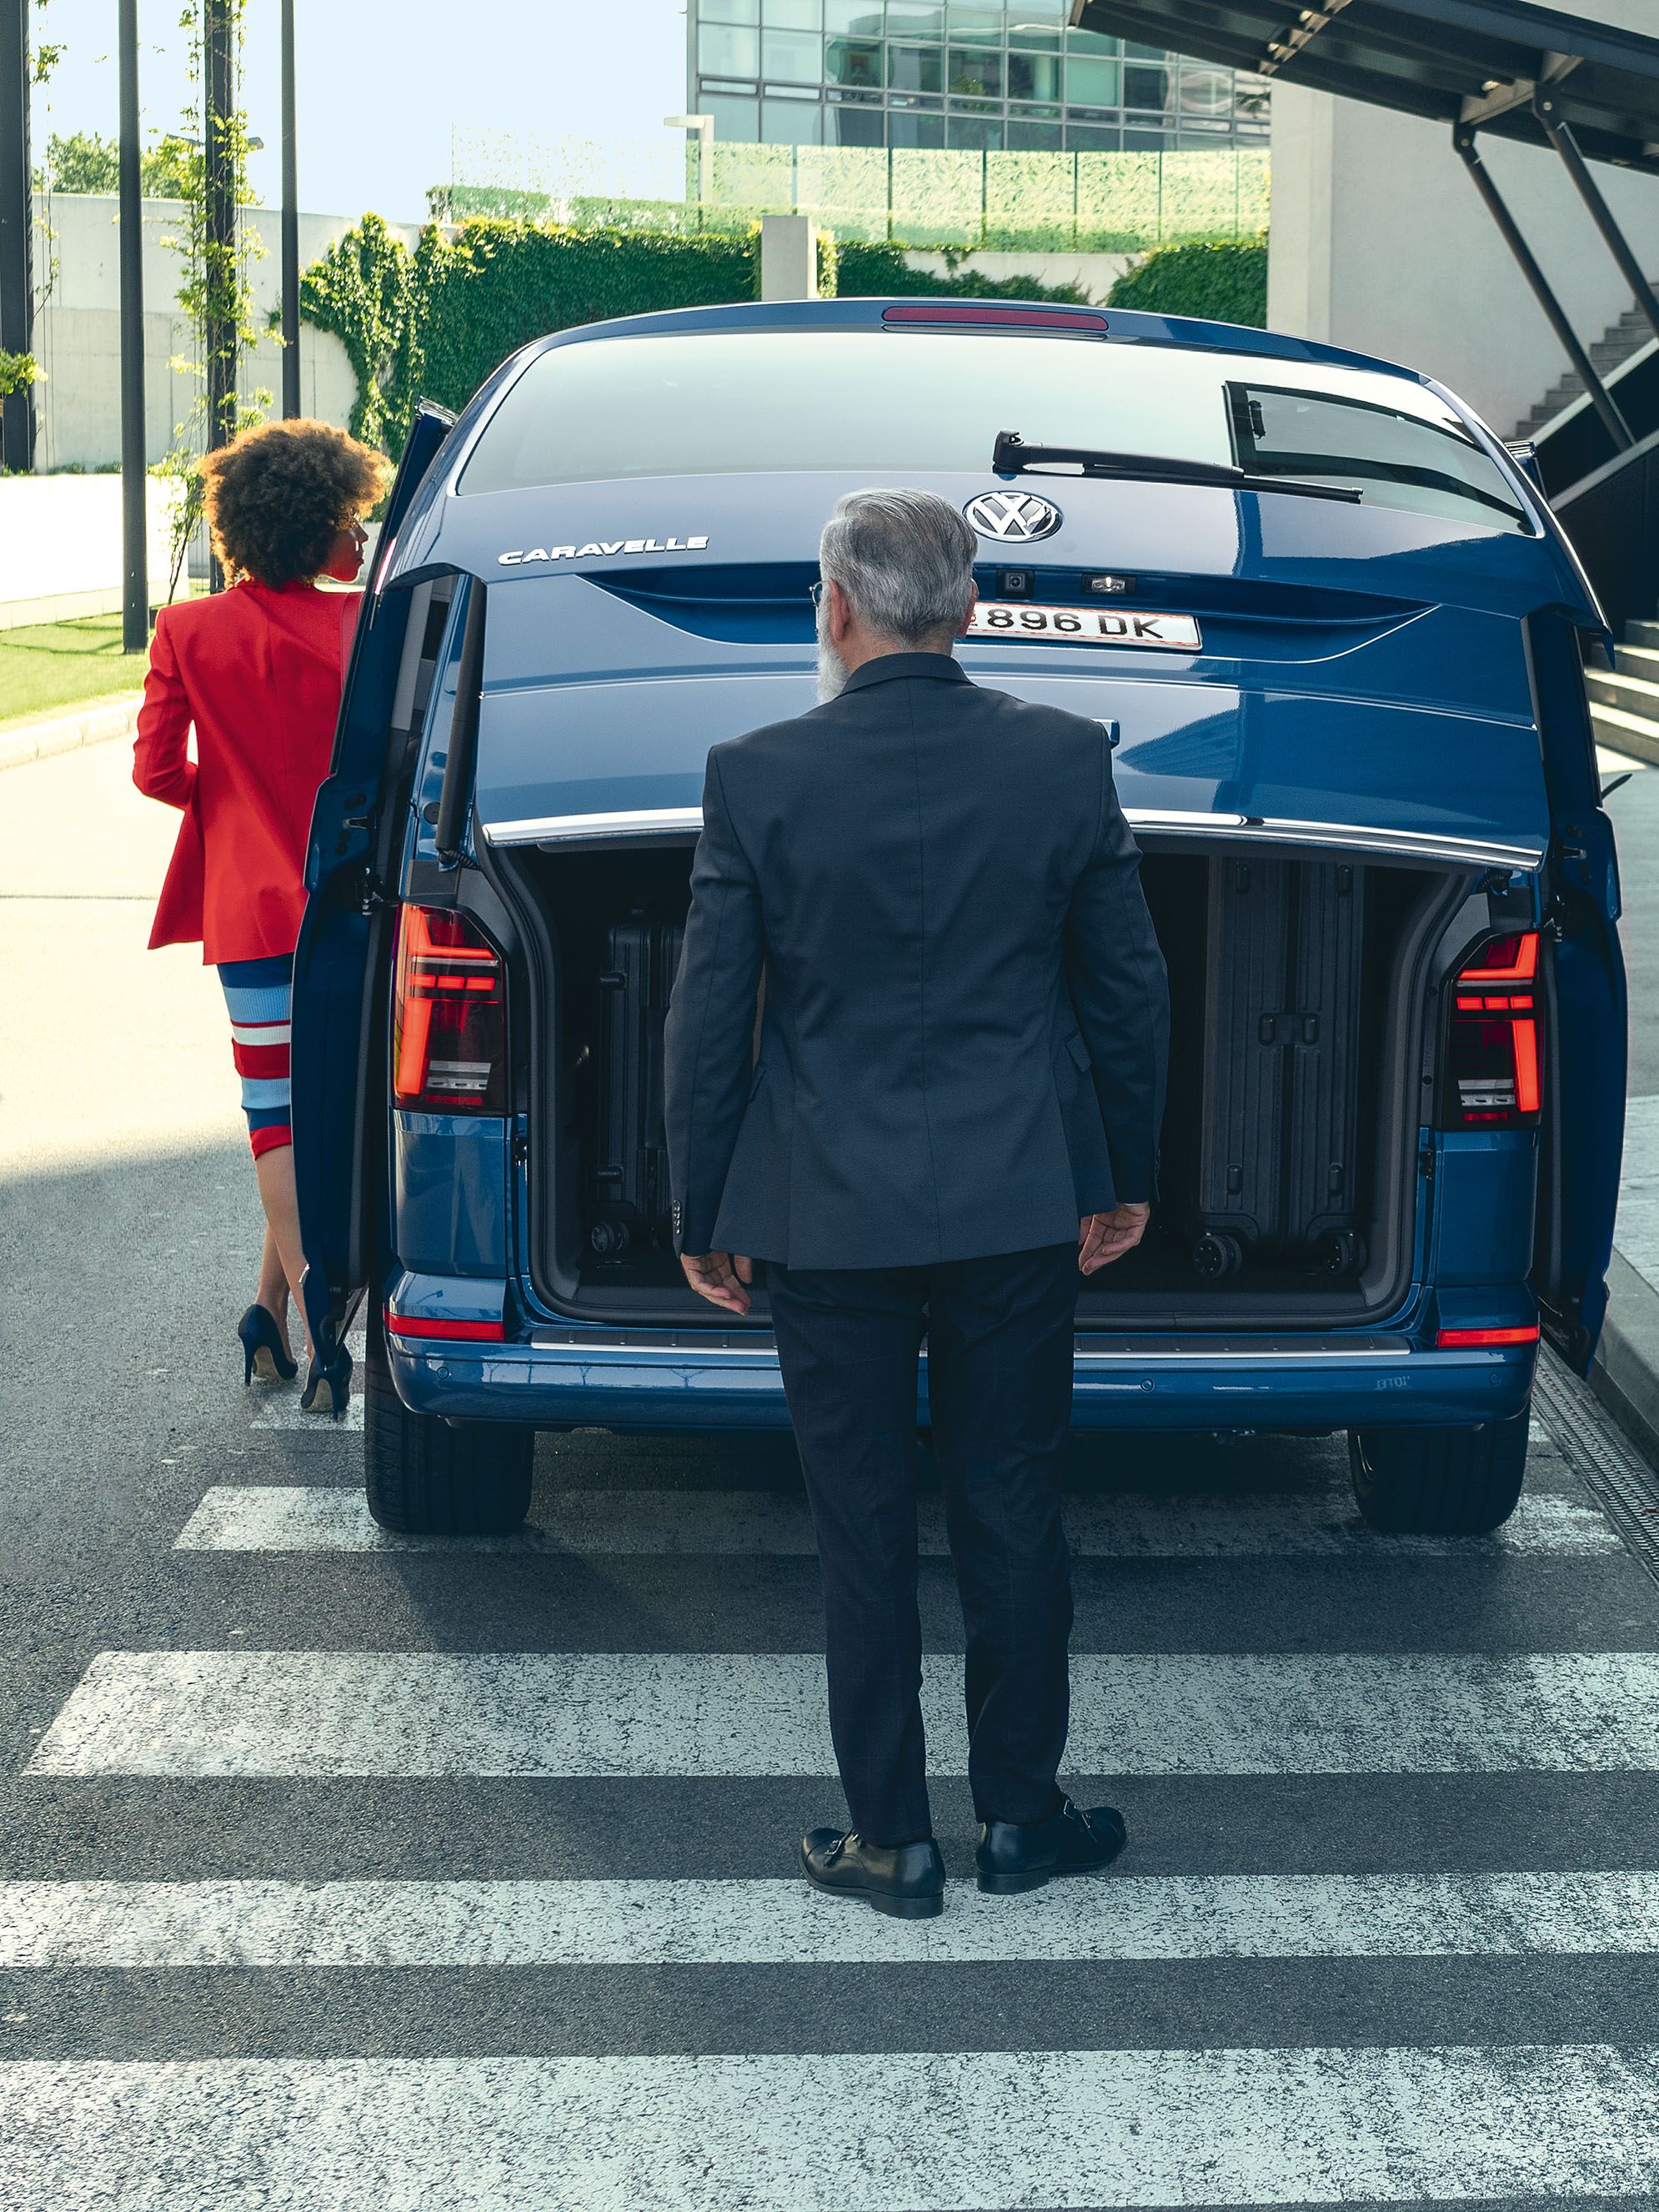 VW Caravelle in Blau in der Heckansicht